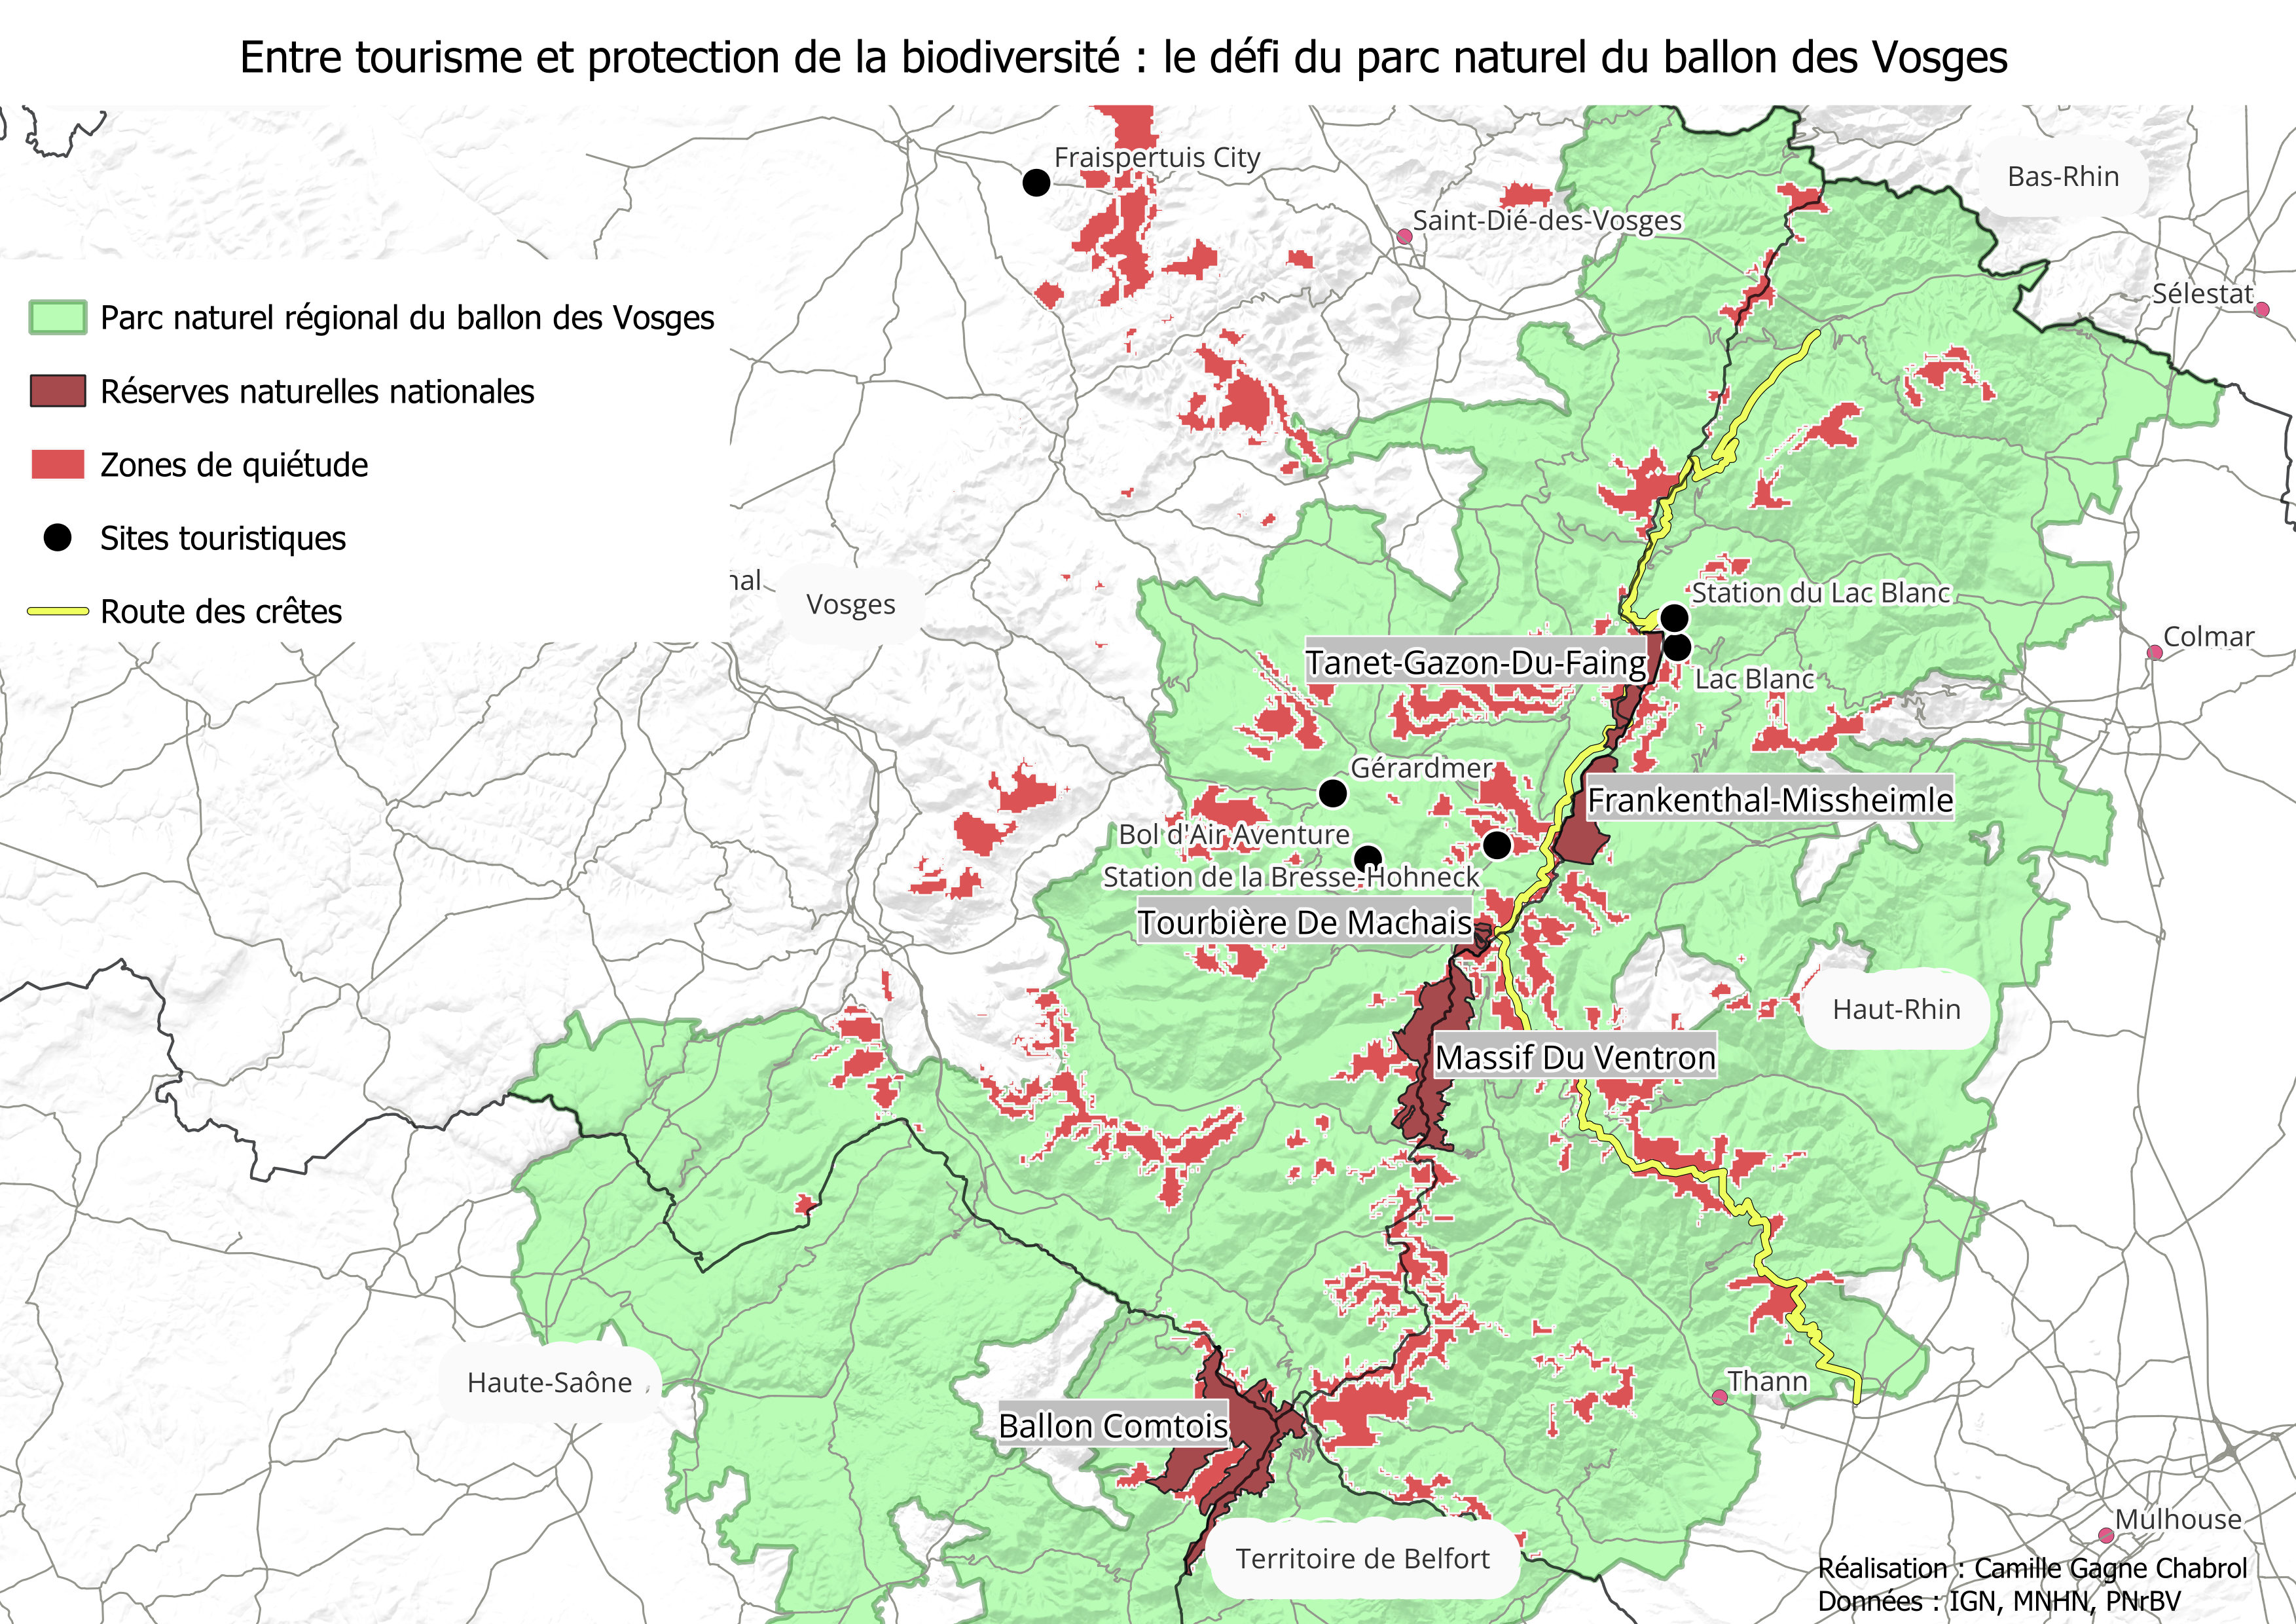 La carte des différentes zones protégées au sein du Parc du Ballon des Vosges